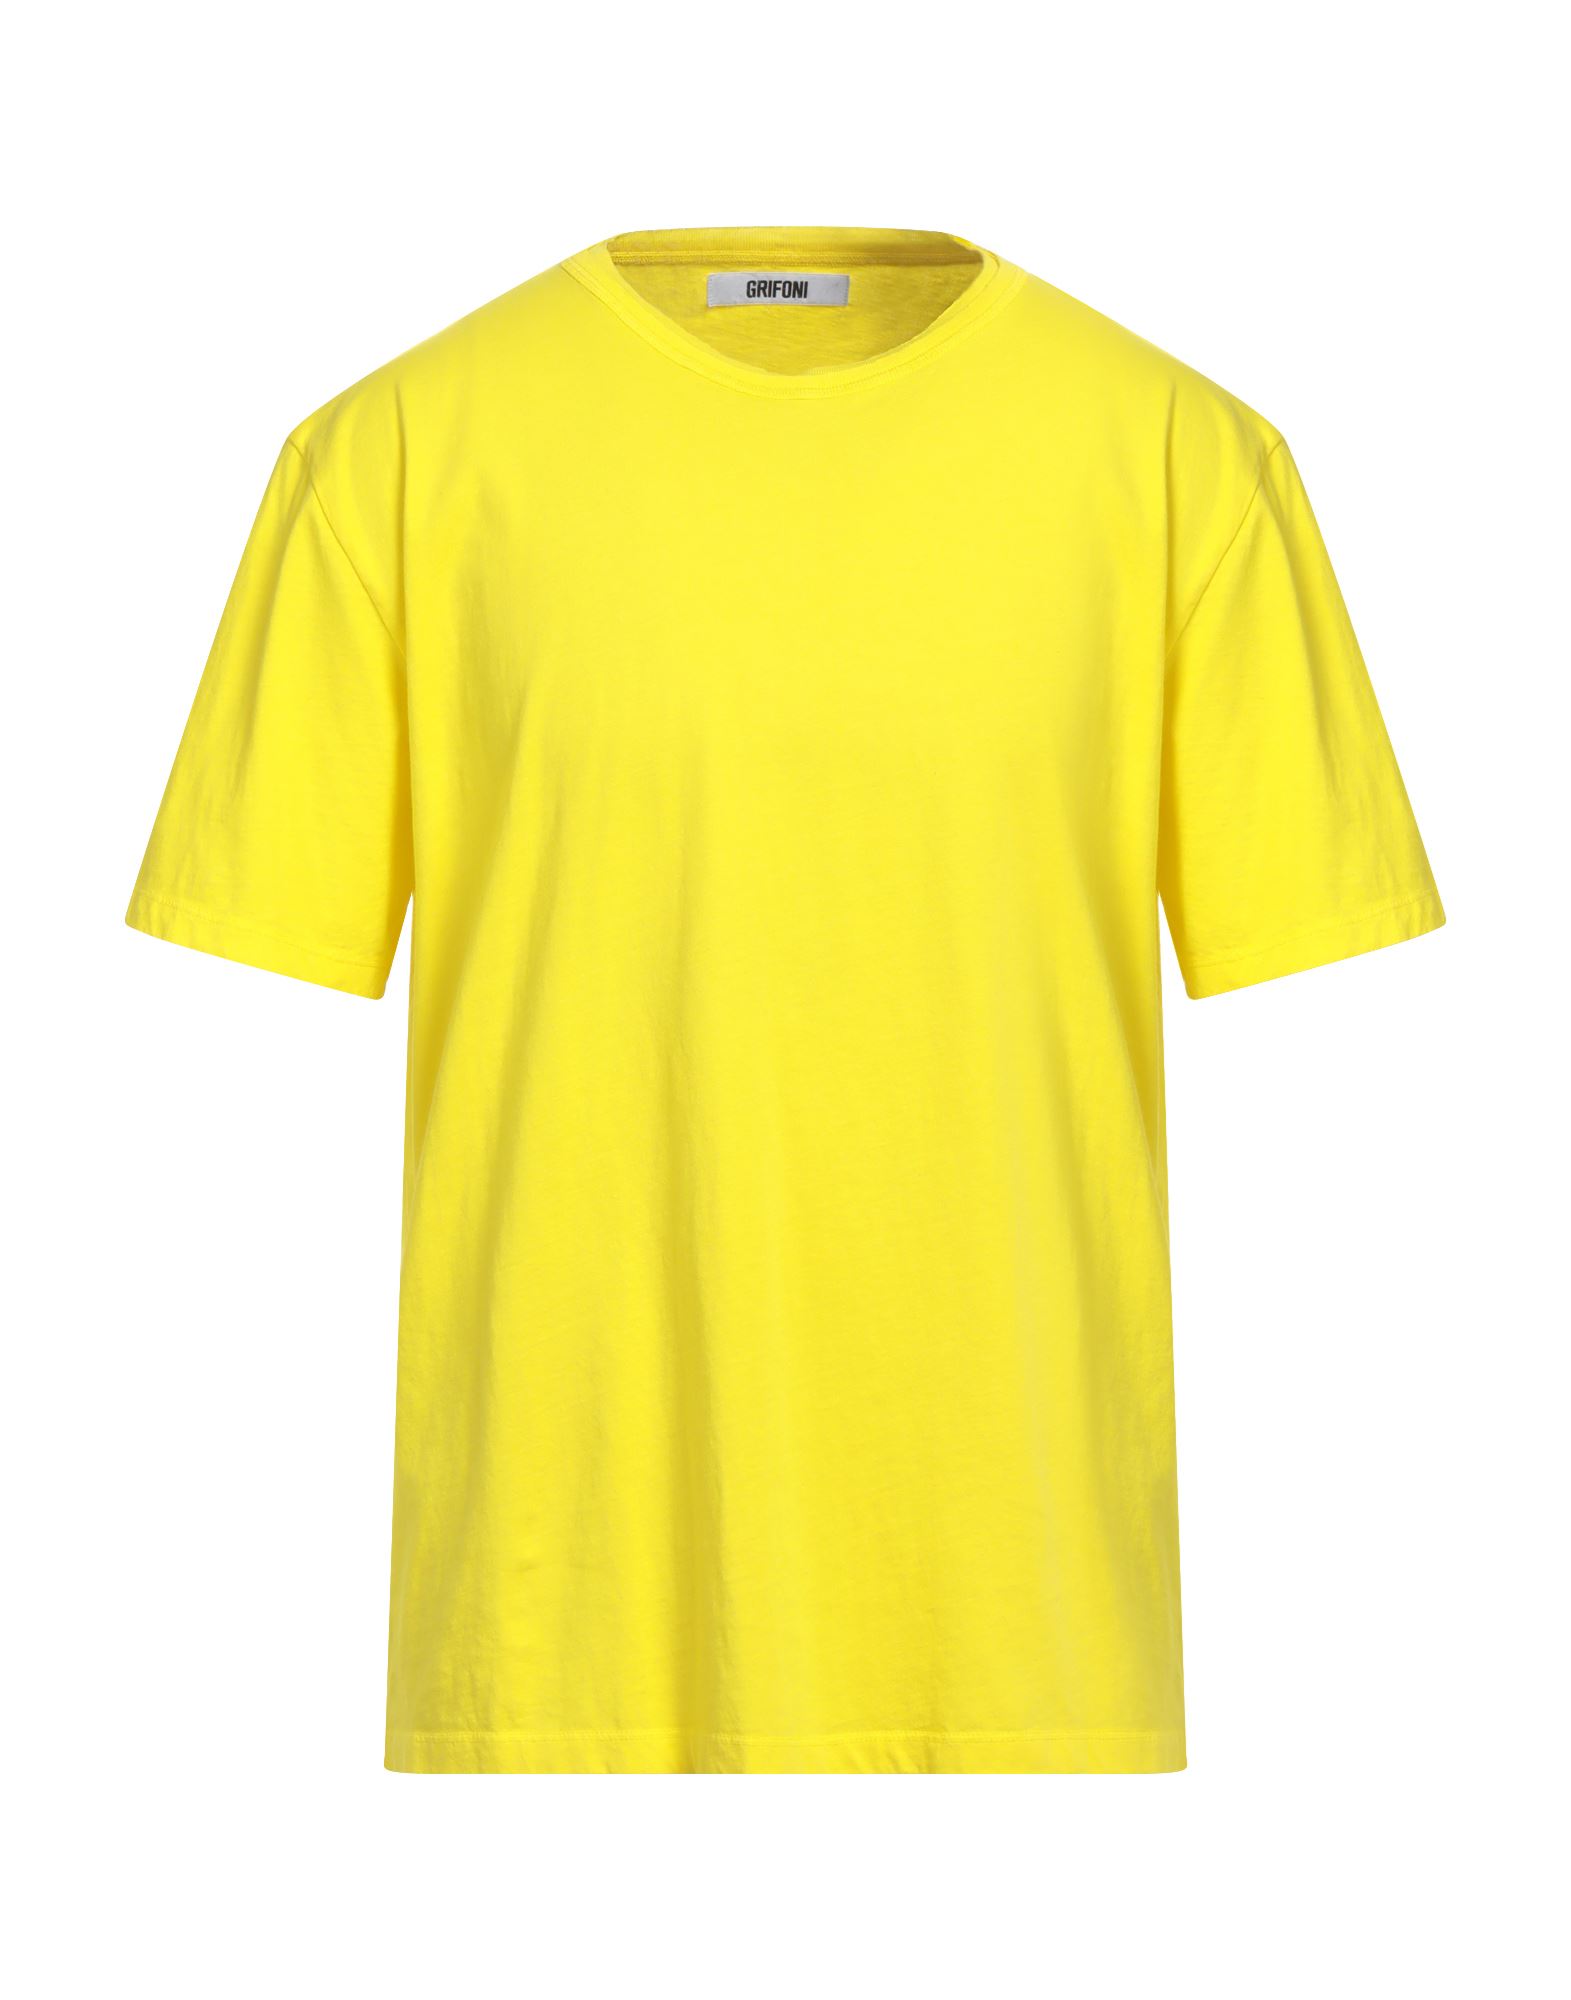 GRIFONI T-shirts Herren Gelb von GRIFONI